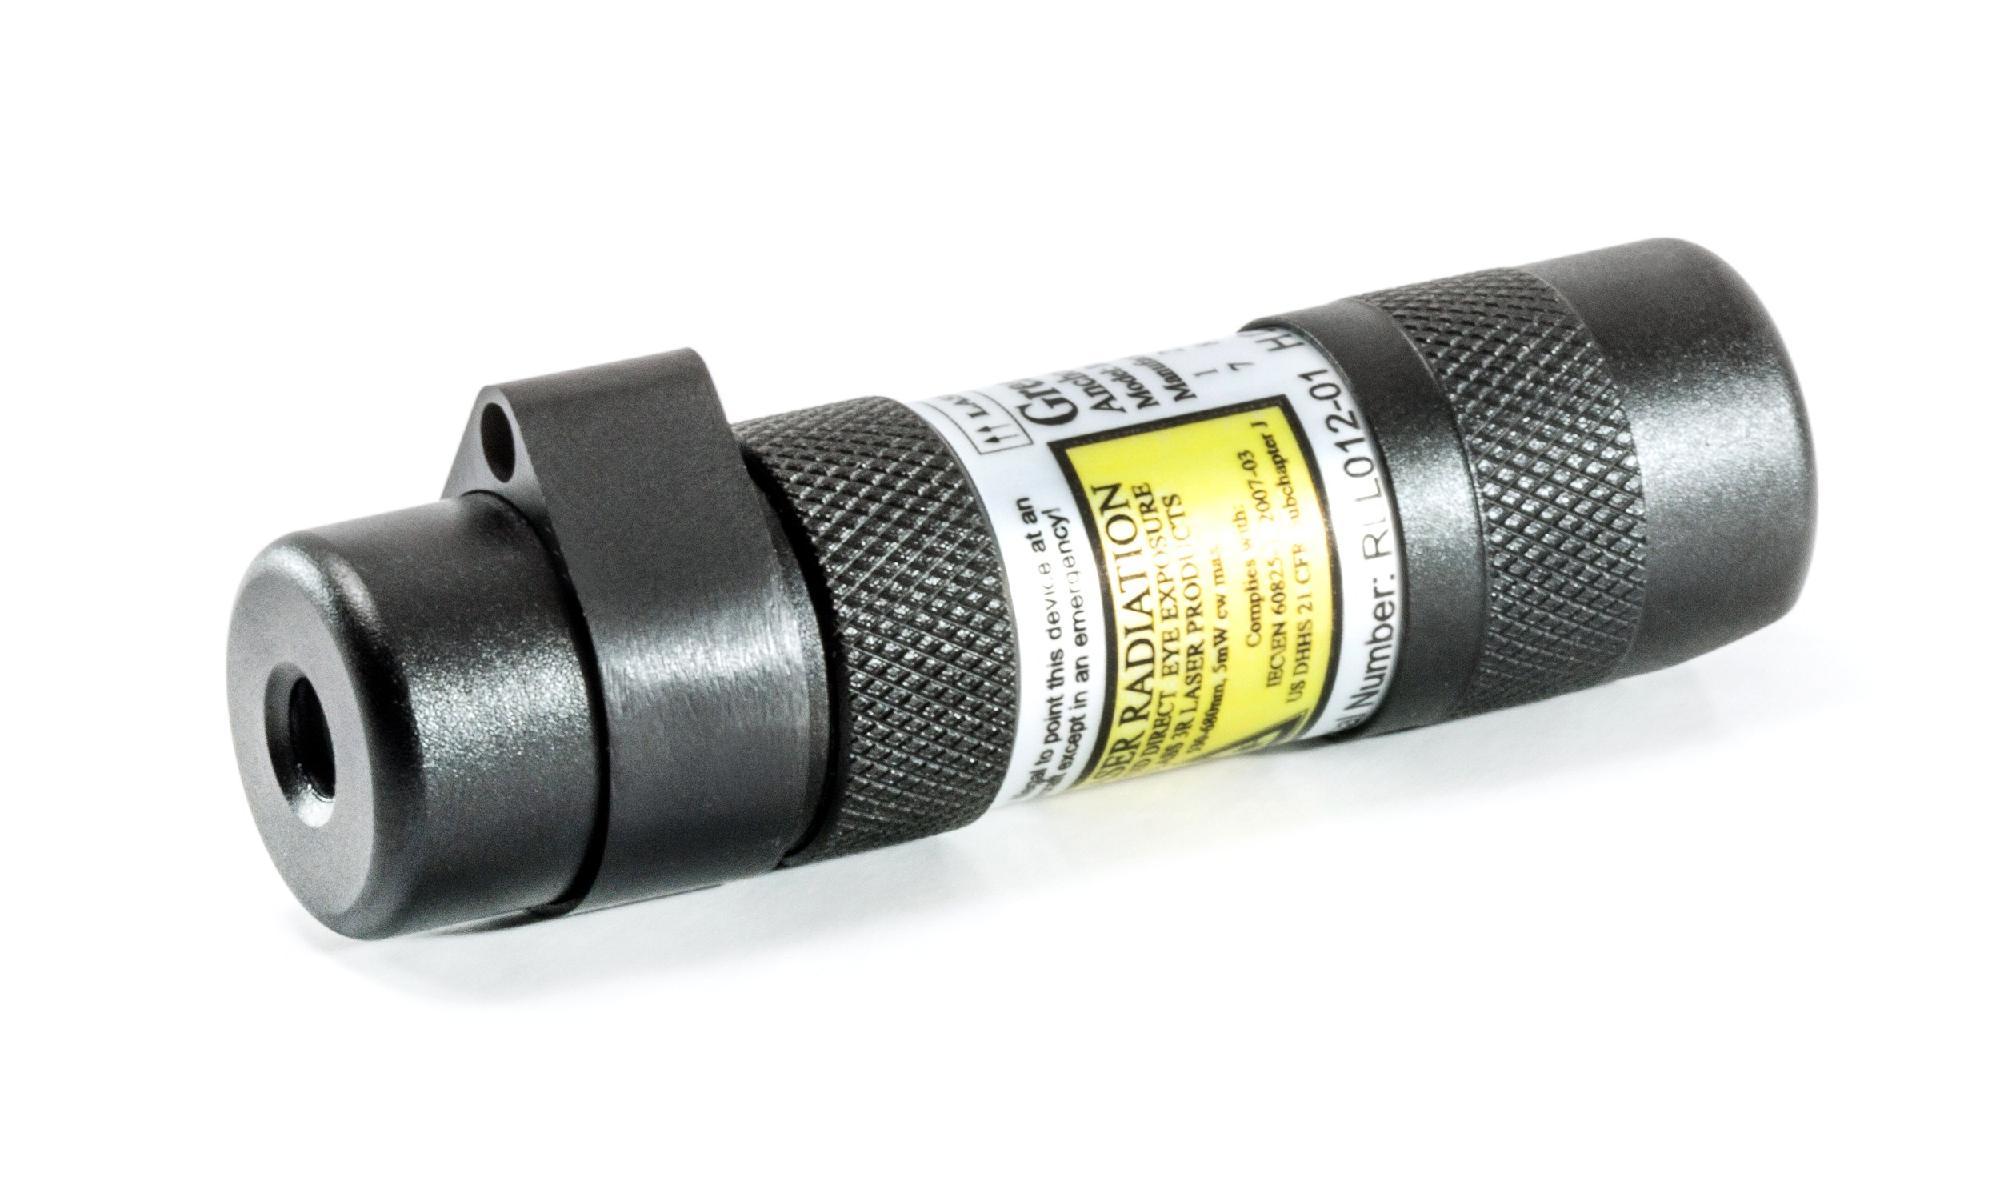 сигнальное устройство mps 1 8595188145978 Спасательное лазерное световое сигнальное устройство Greatland Laser, черный